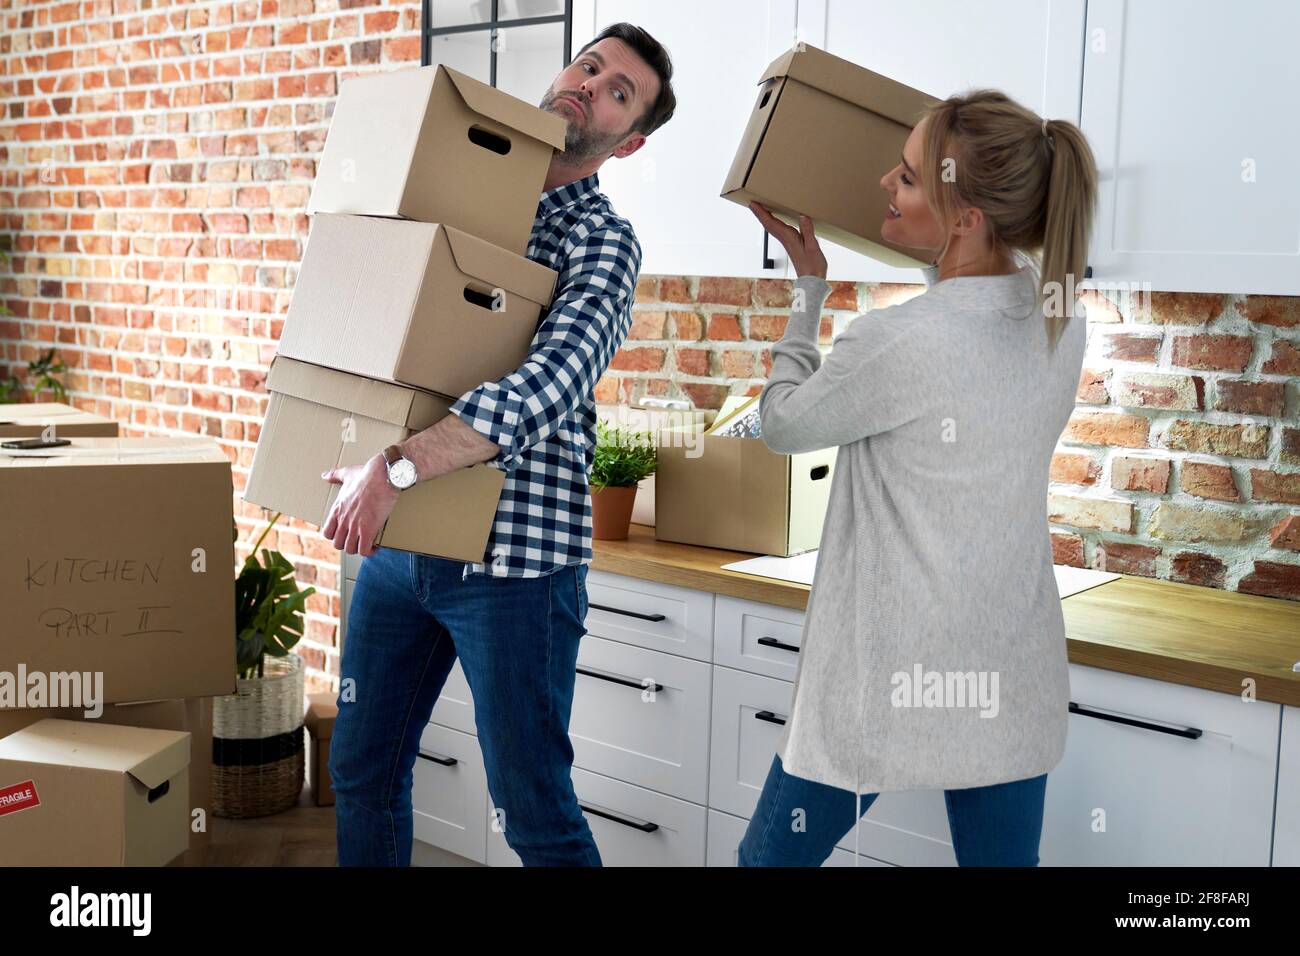 La pareja durante el movimiento hacia fuera toma cajas de cartón Foto de stock